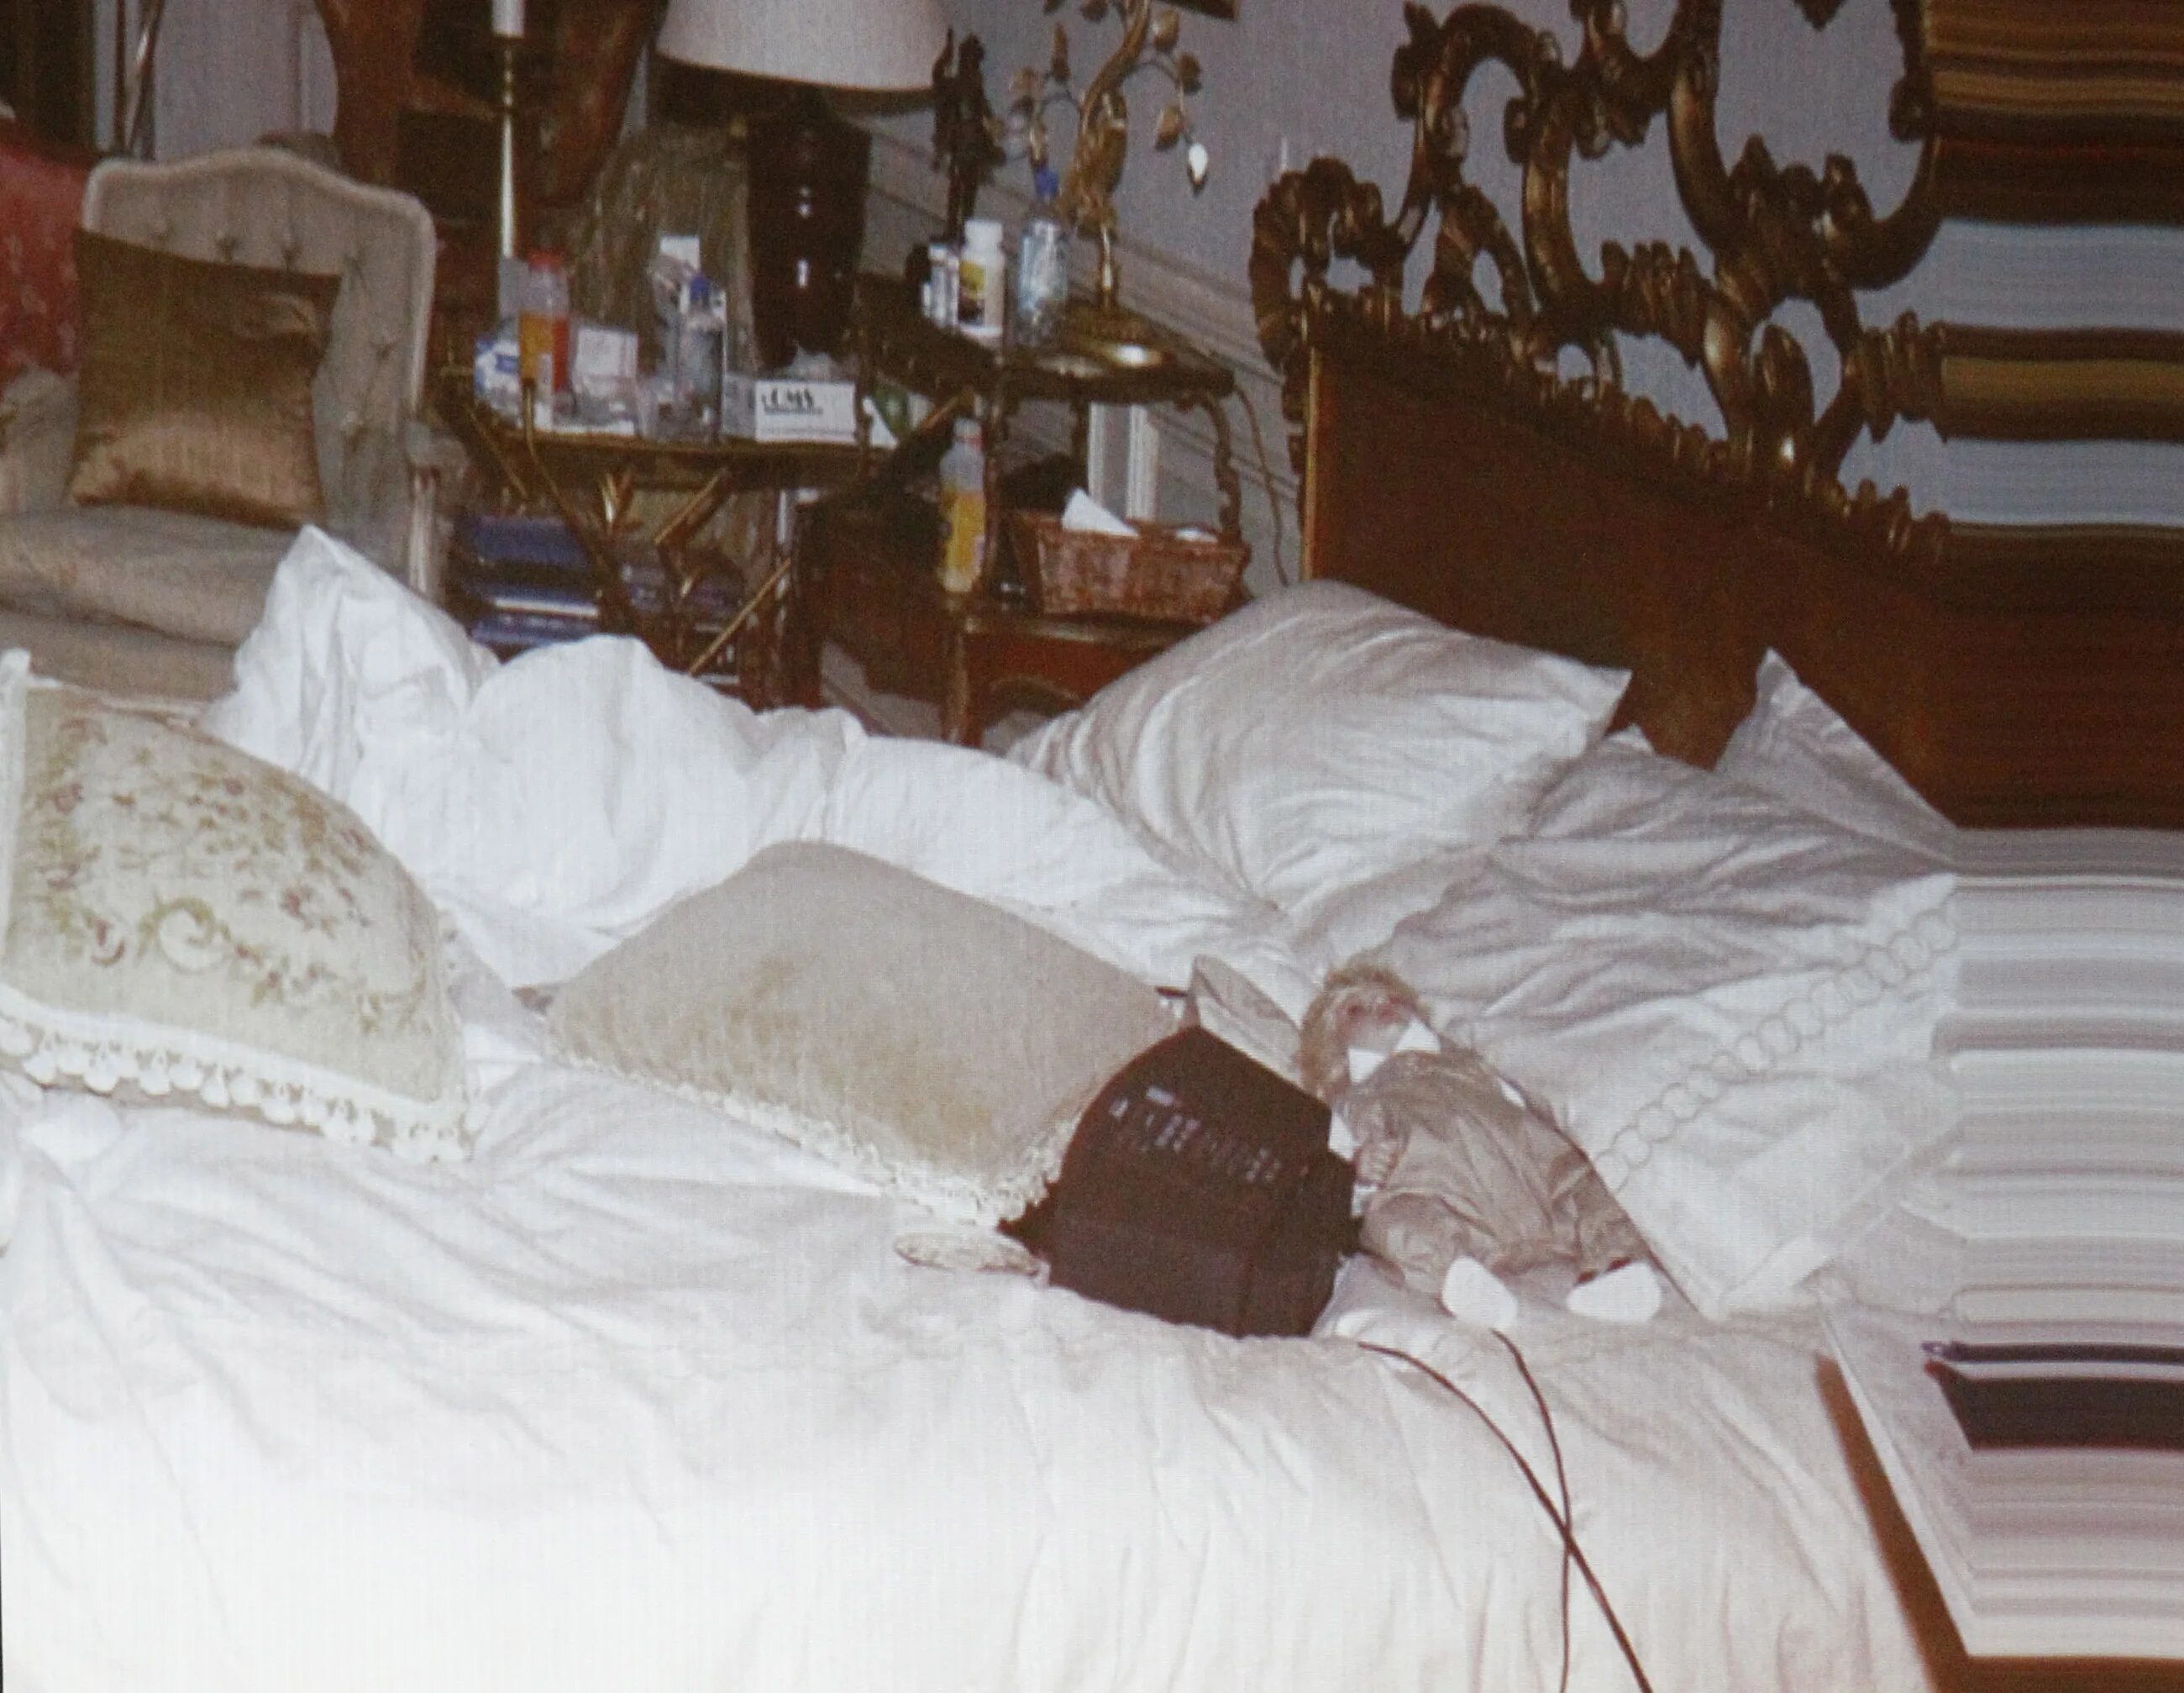 Произведения опубликованы после смерти. Спальня Майкла Джексона в 2009 году. Посмертный снимок Майкла Джексона.